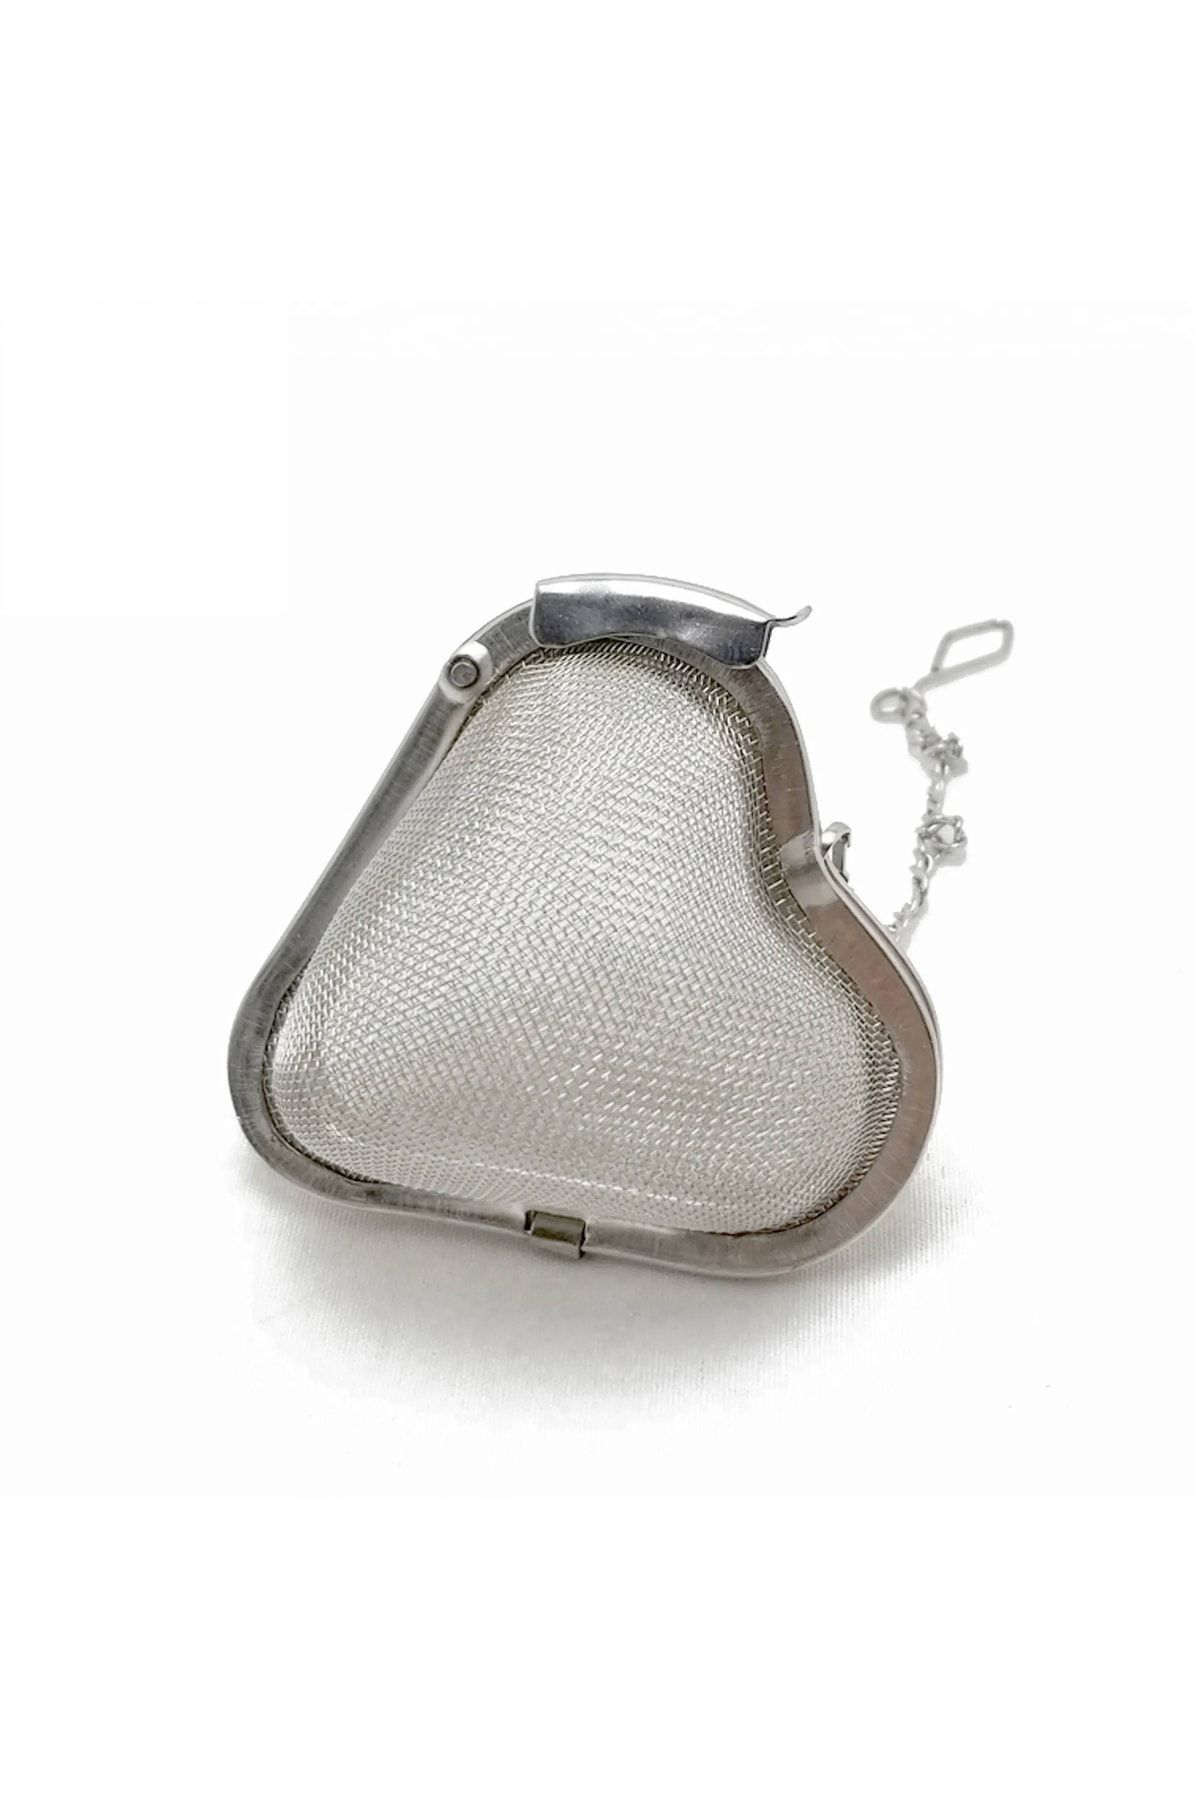 Mahmood Tea Kalp Tasarımlı Silver Paslanmaz Çelik Çay Süzgeci